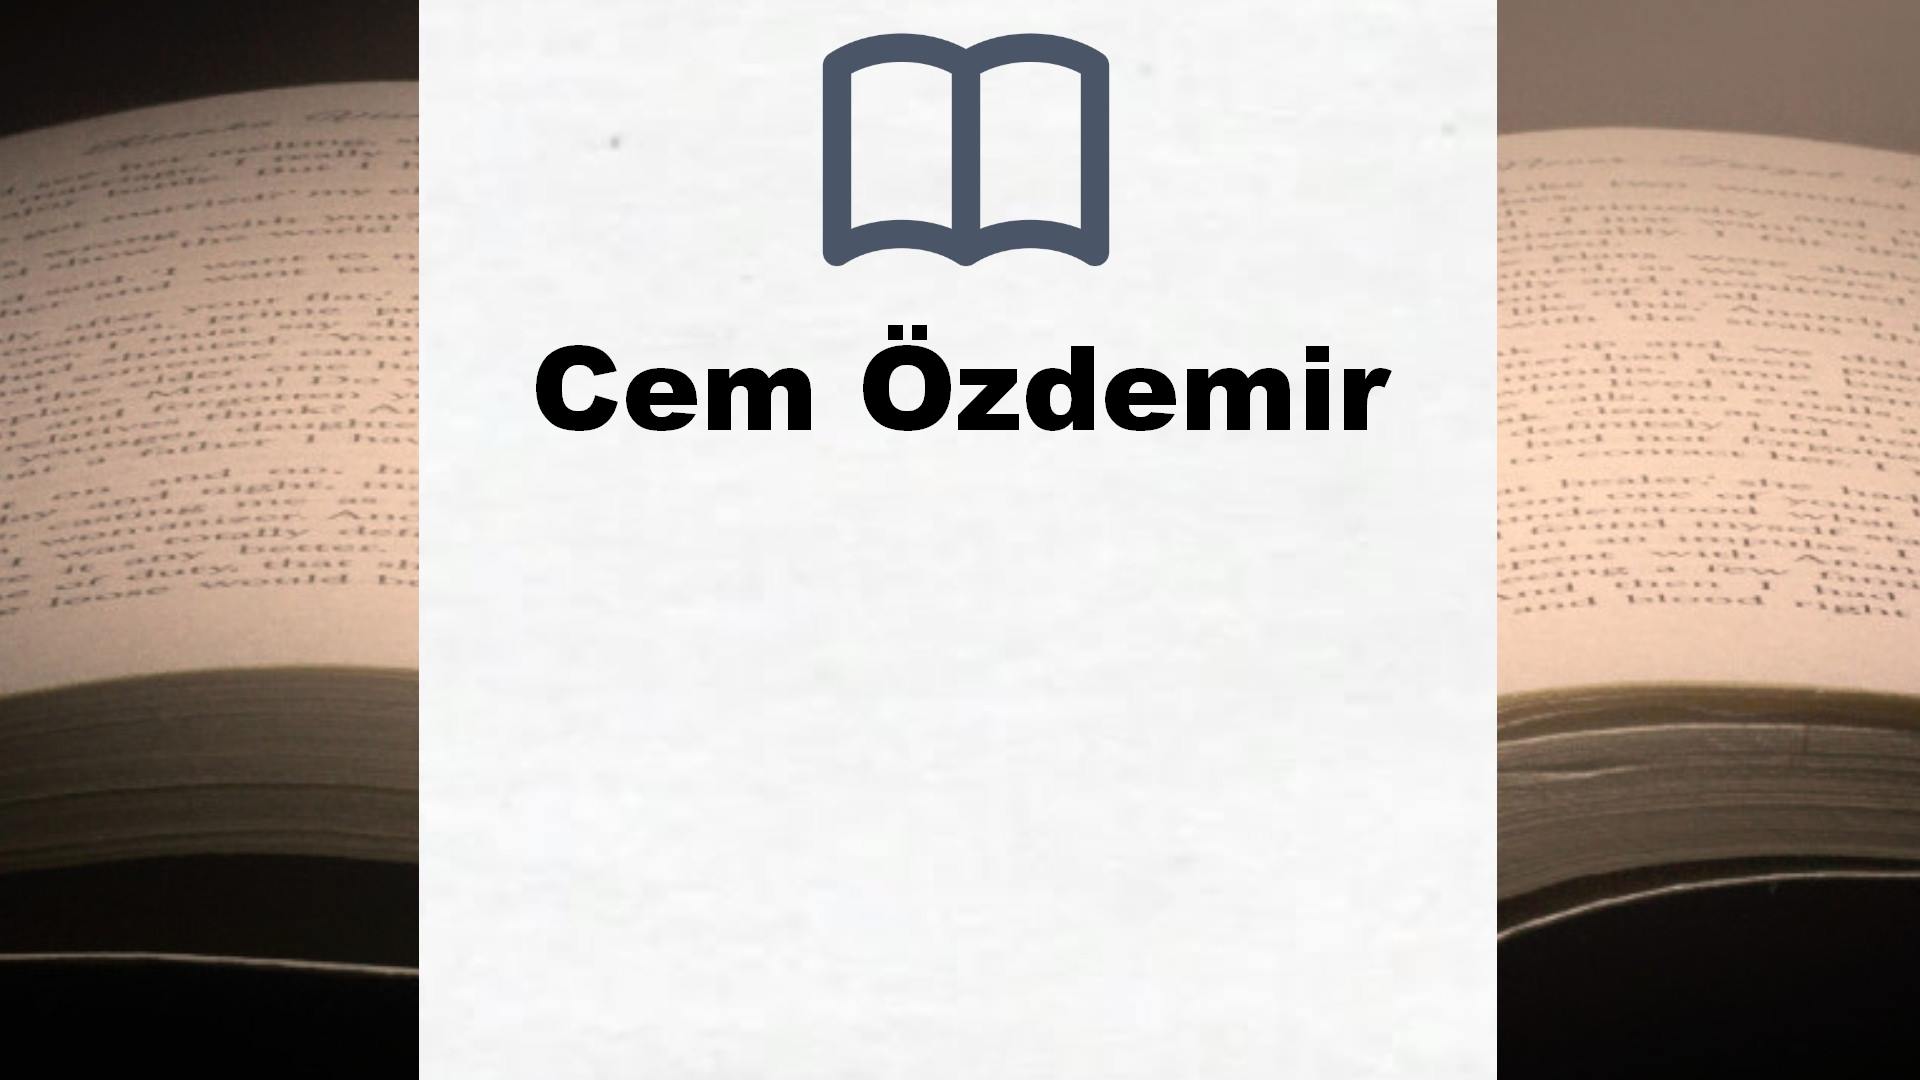 Bücher über Cem Özdemir